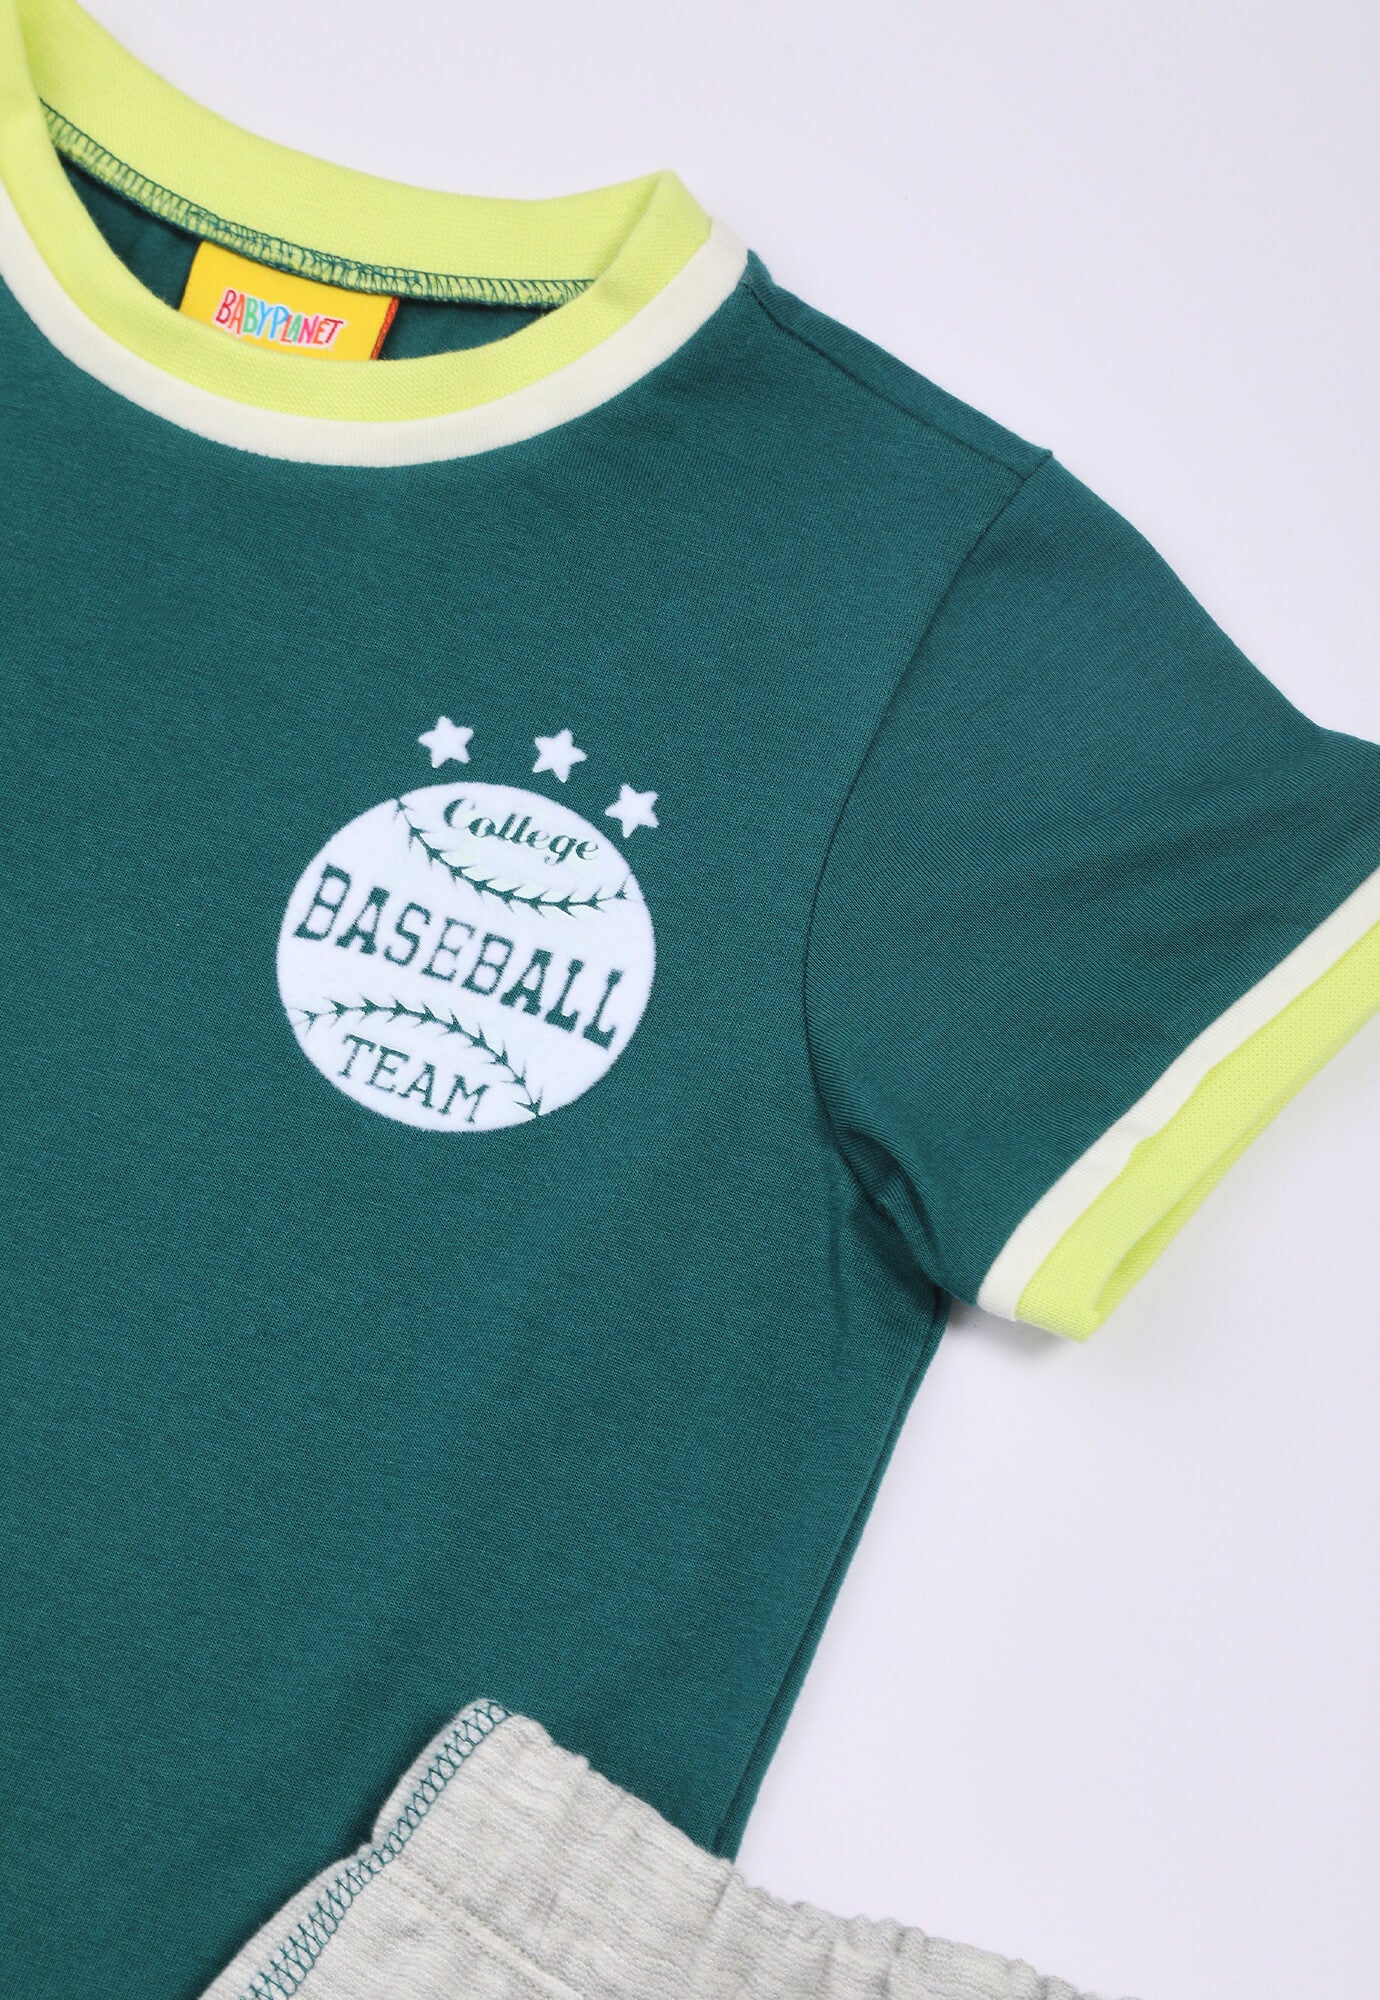 Conjunto De Camiseta Verde Esmeralda Con Estampado Y Pantalón Gris Para Bebé Niño